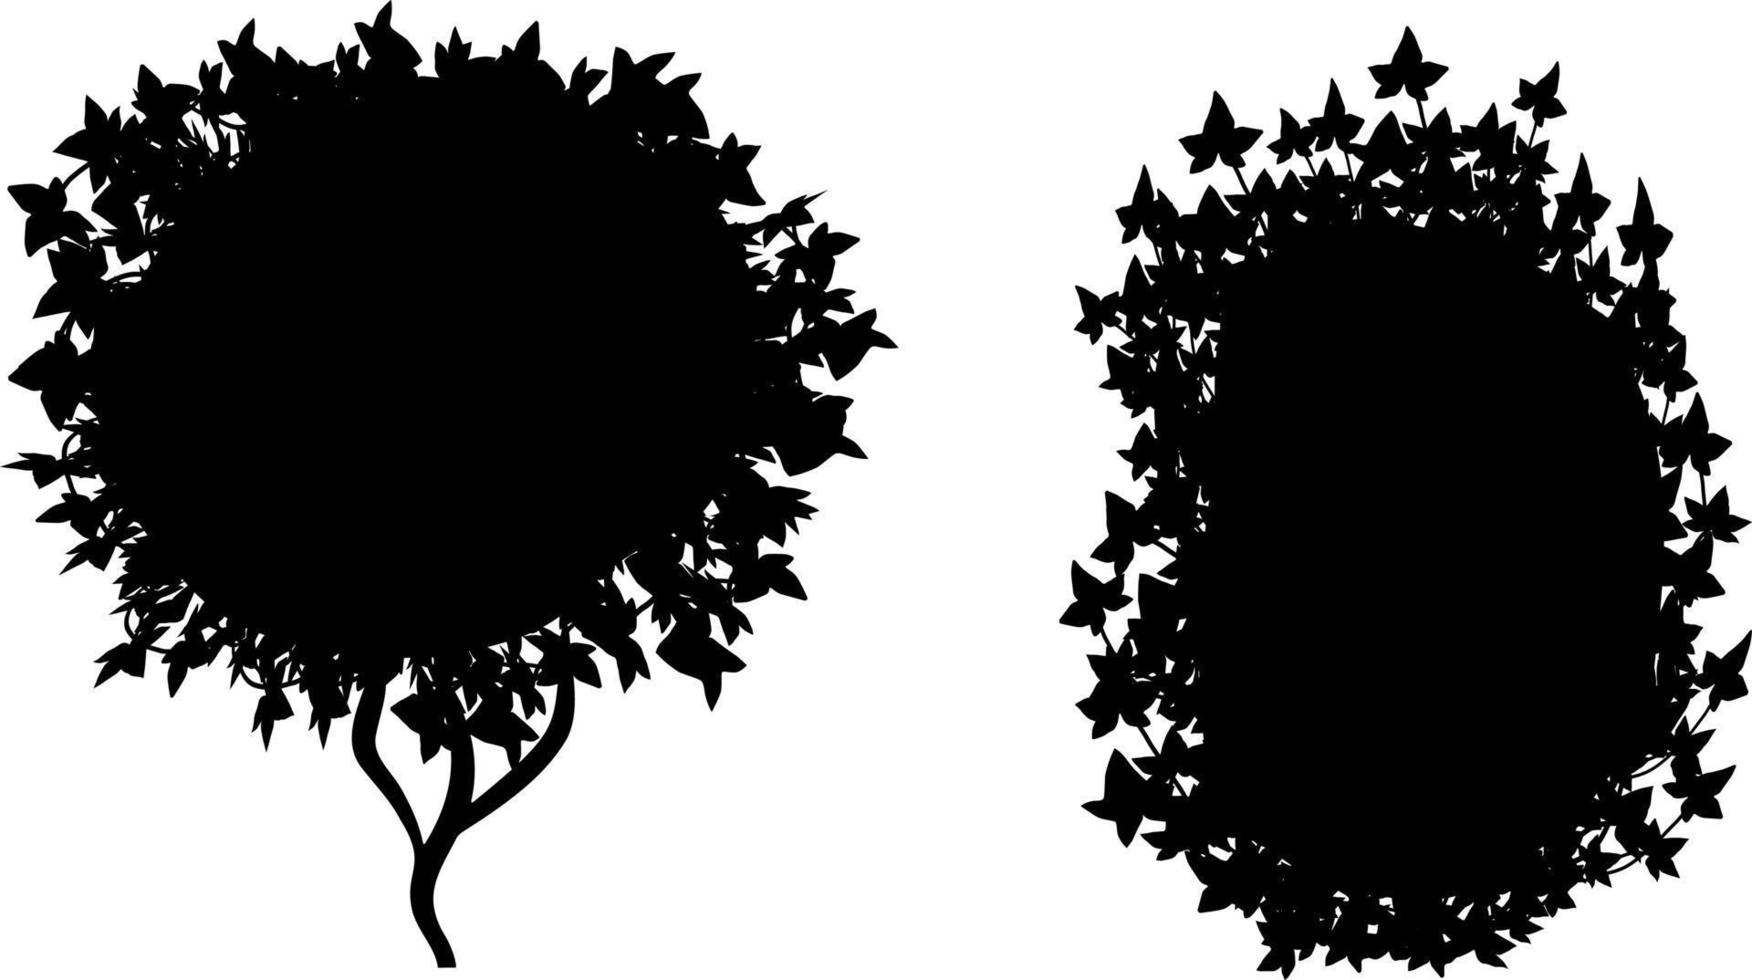 zwart-wit vector tekening van struiken.